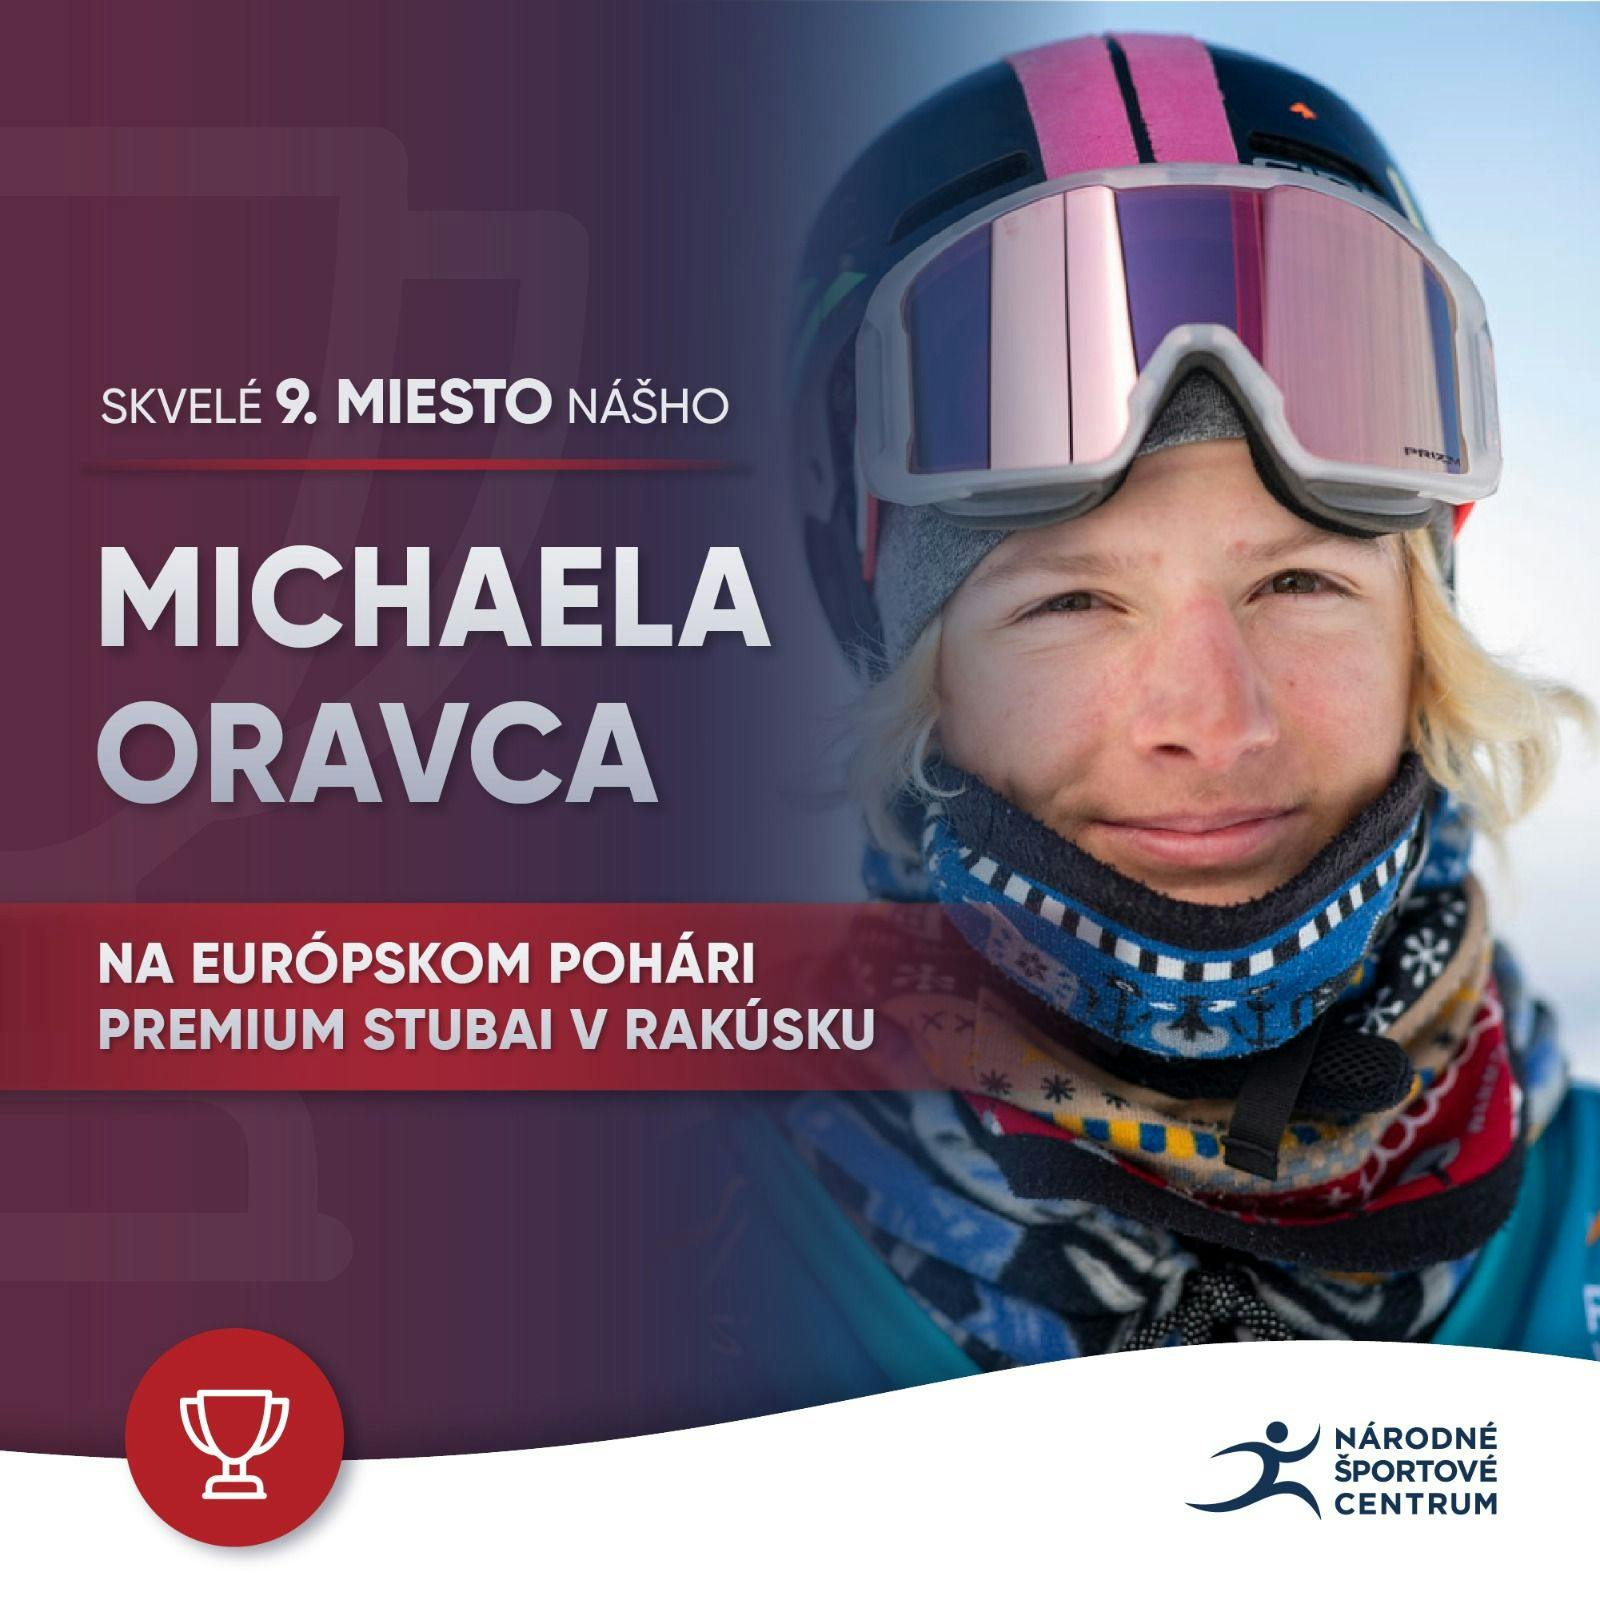 Michael Oravec získal 9. miesto na Európskom pohári premium